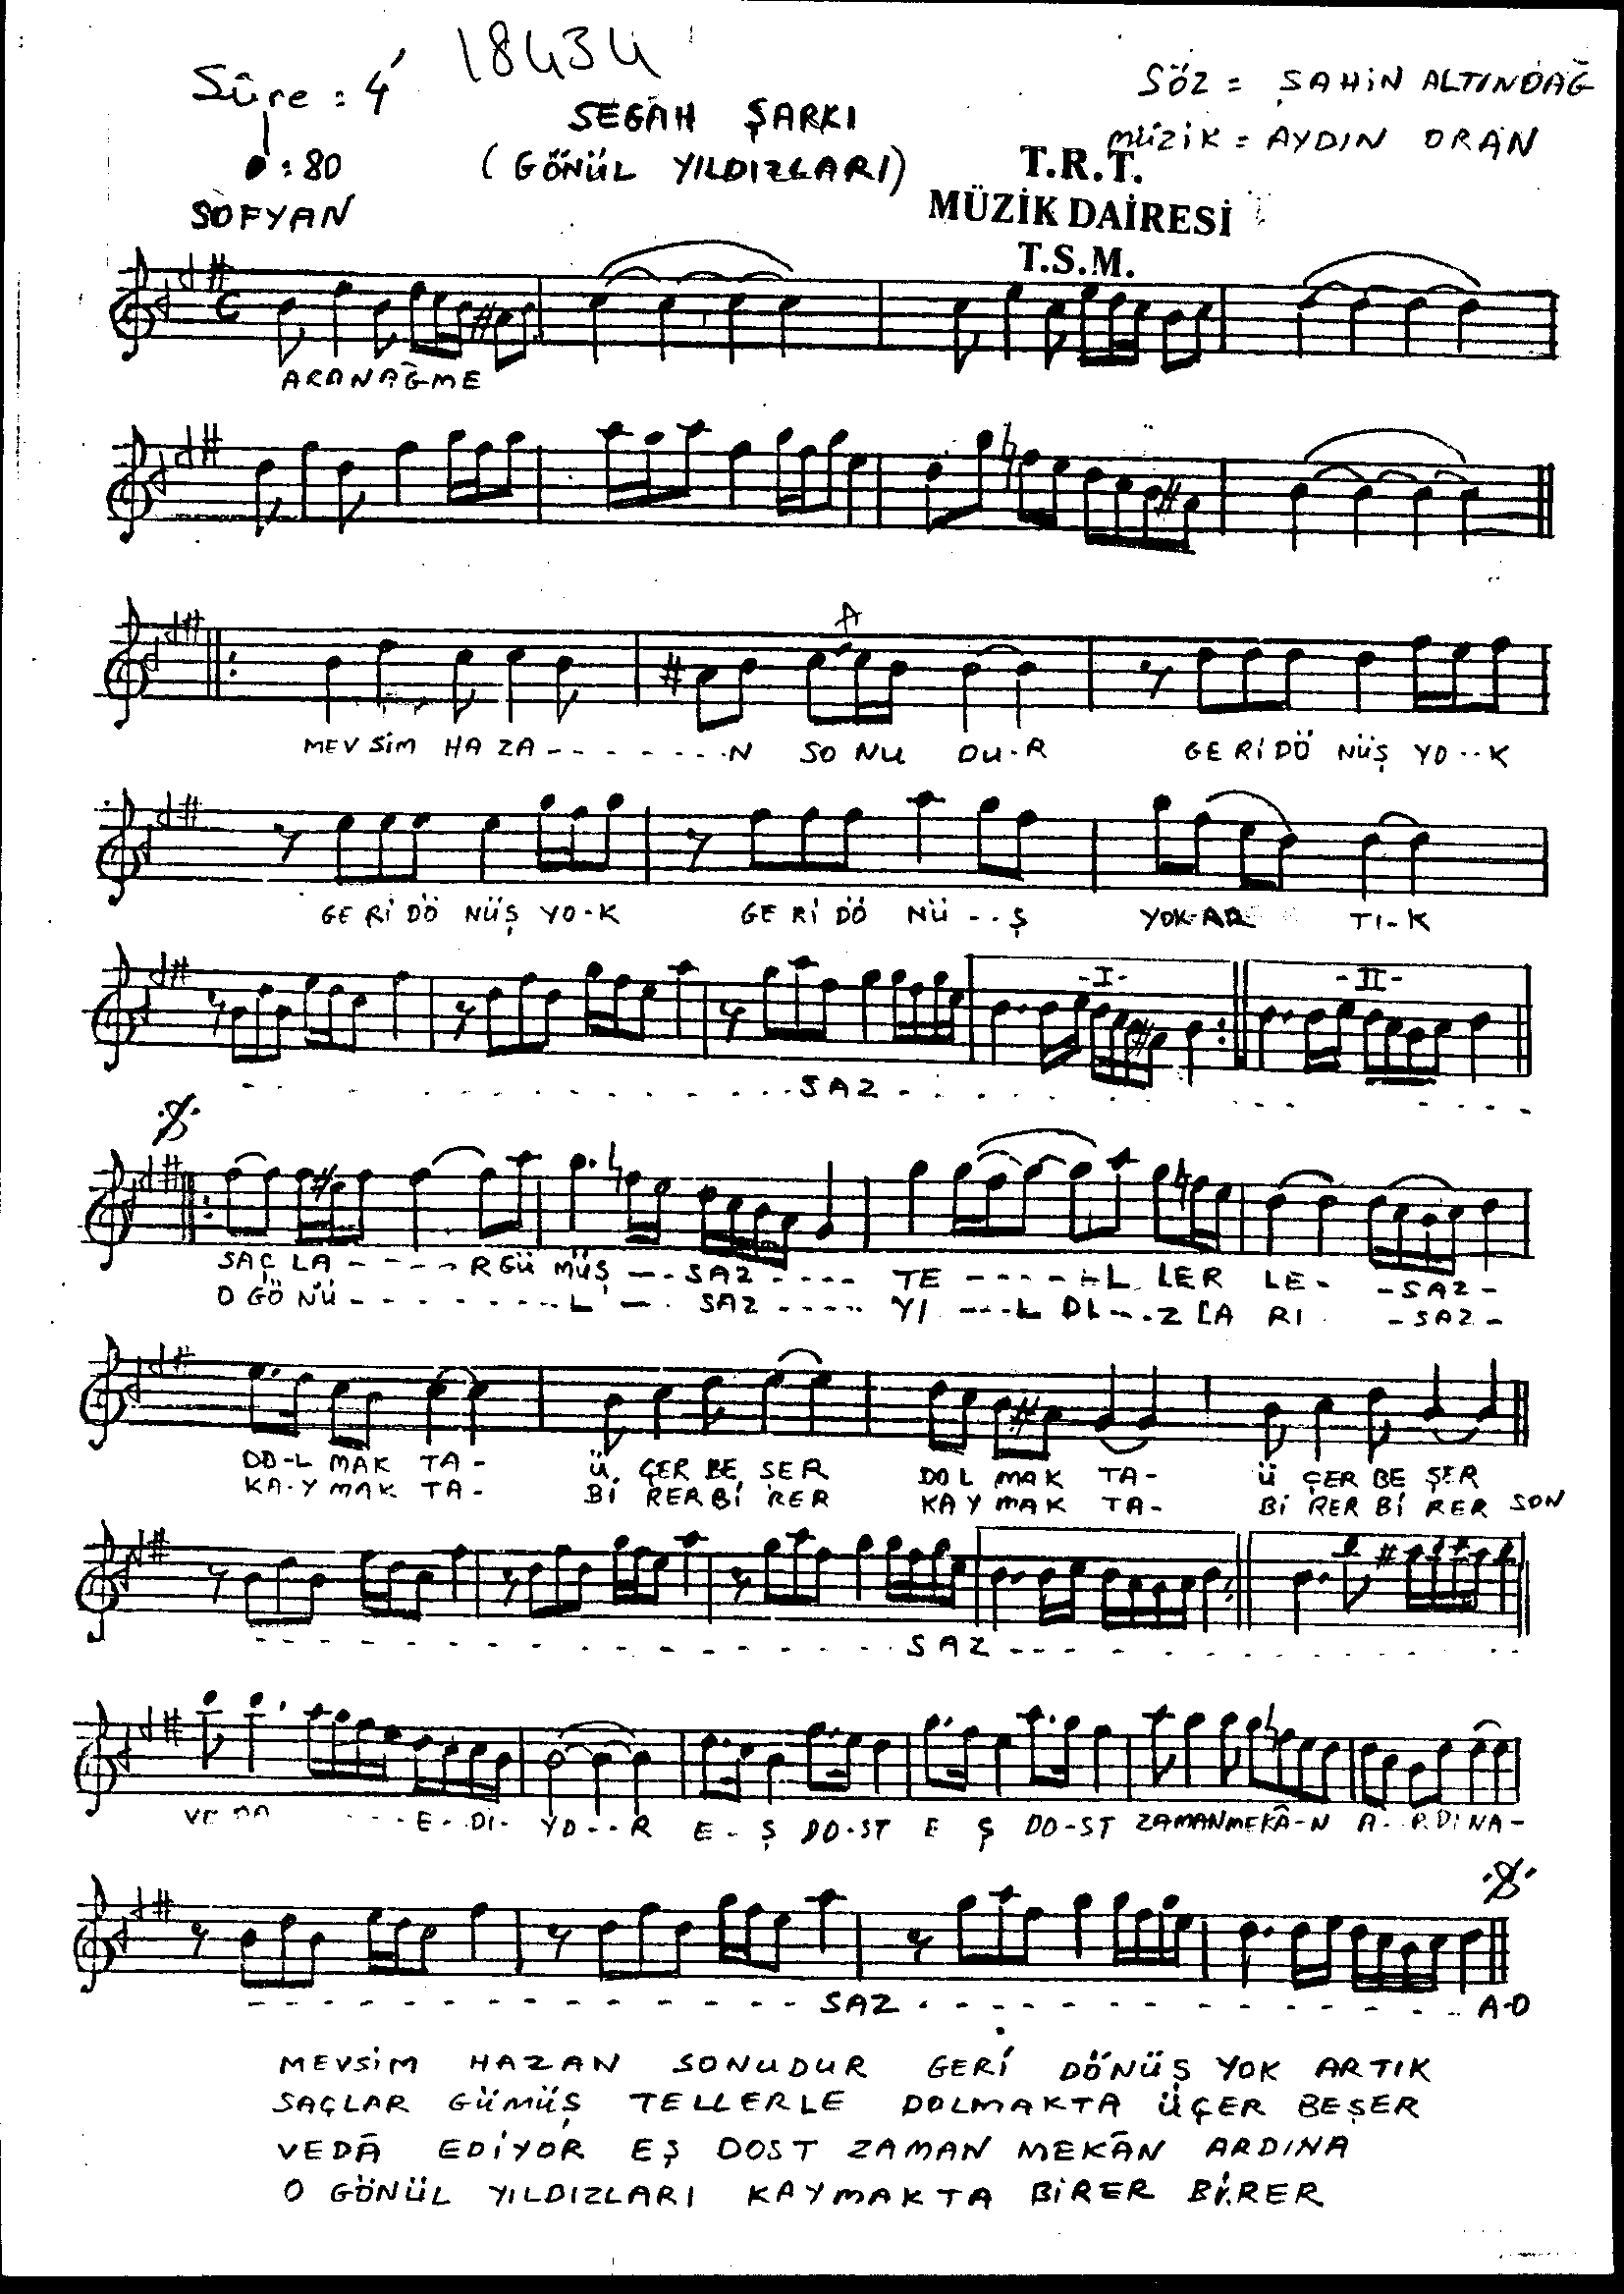 Segâh - Şarkı - Aydın Oran - Sayfa 1